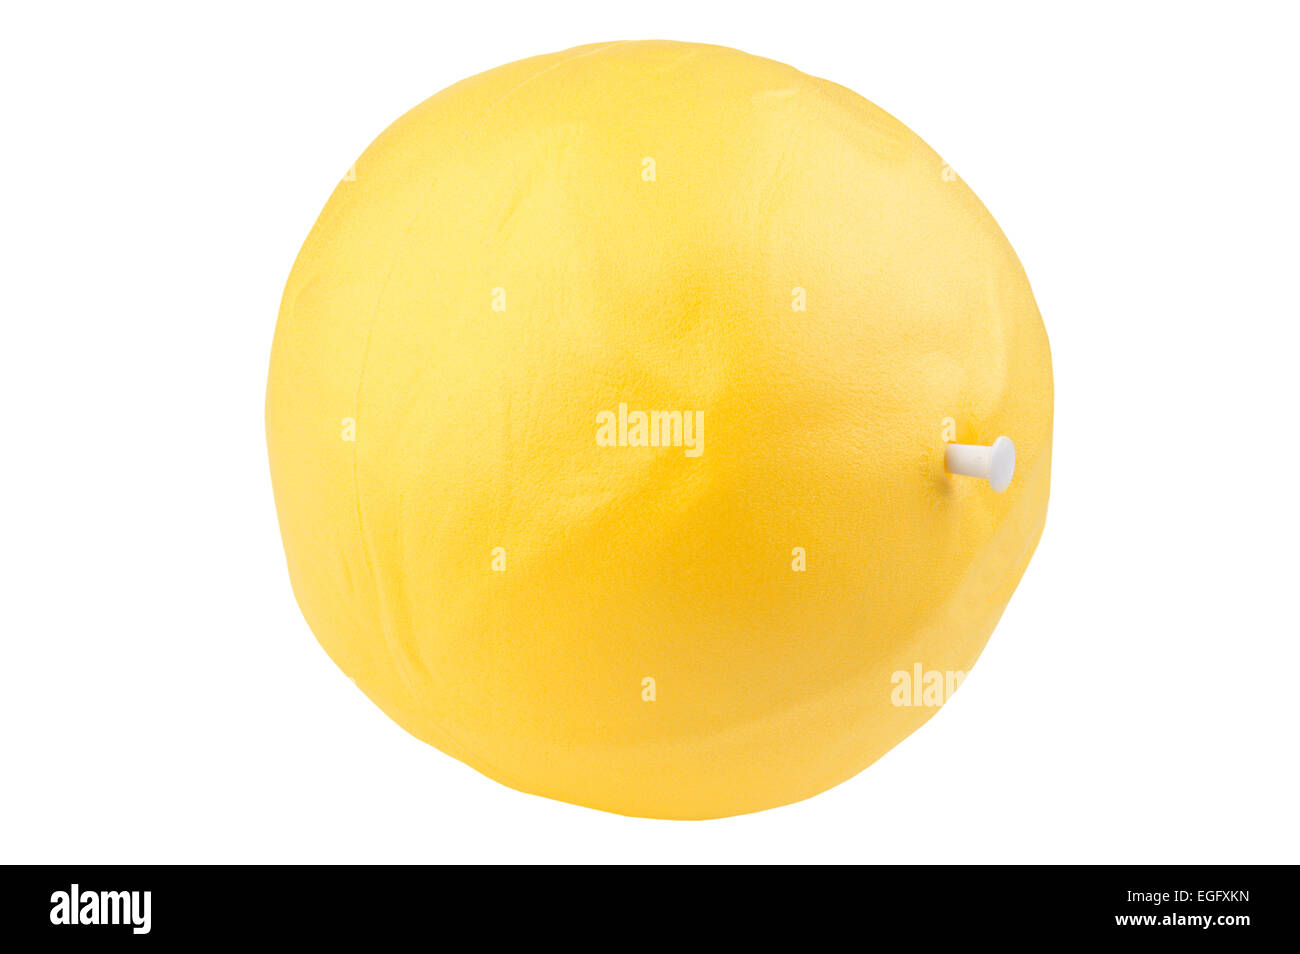 isoliertes Objekt auf weiß - Ball für fitness Stockfoto